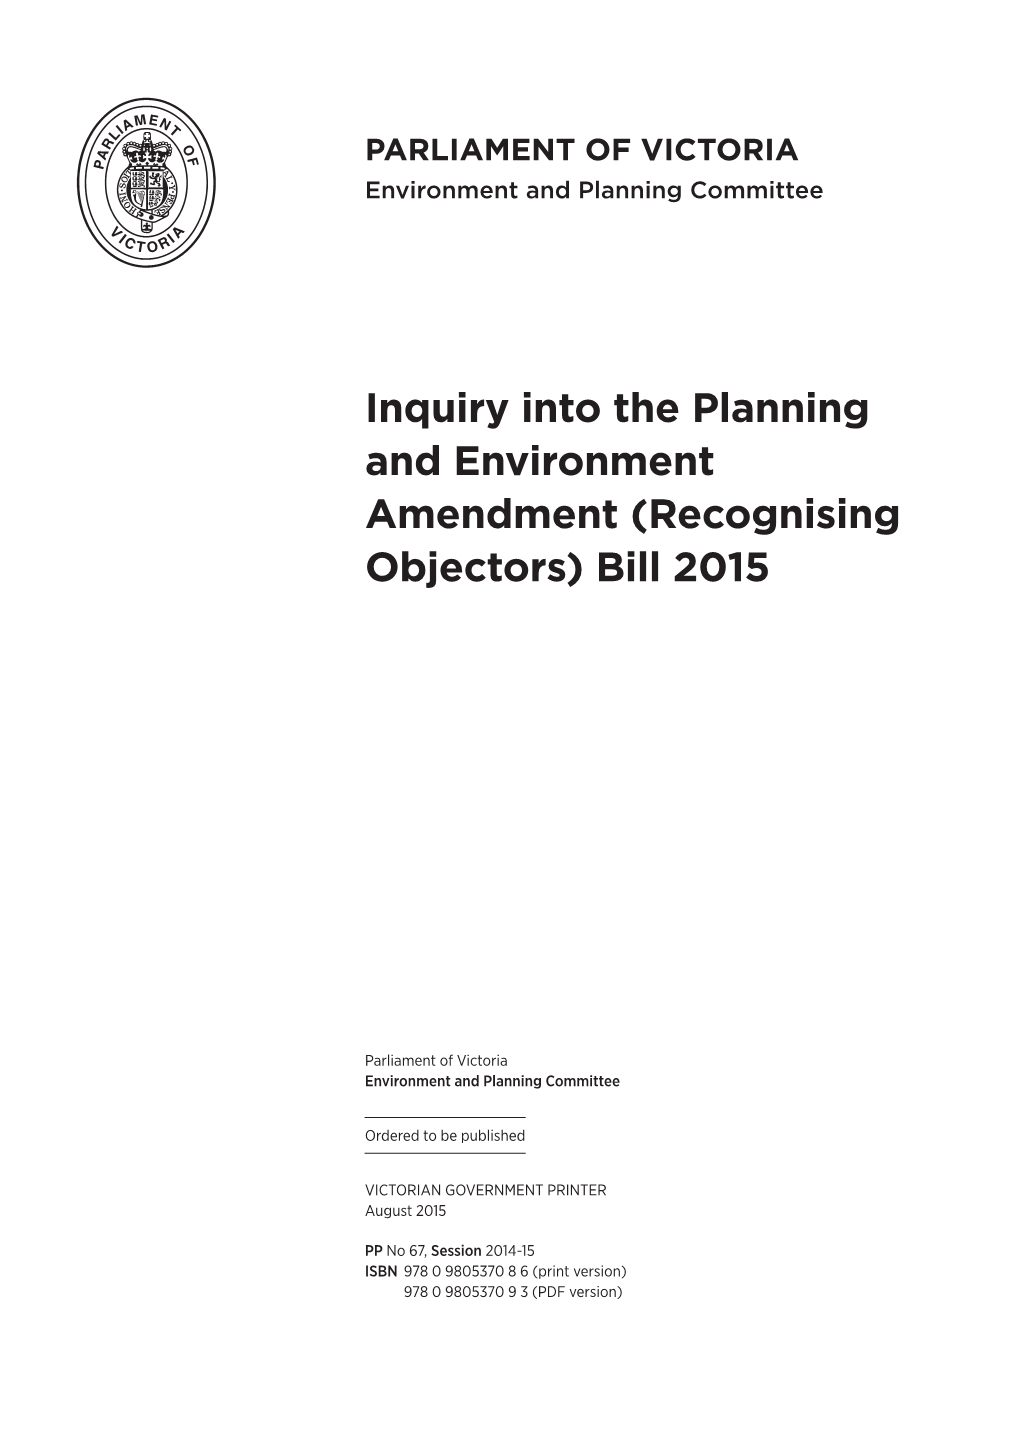 Recognising Objectors) Bill 2015